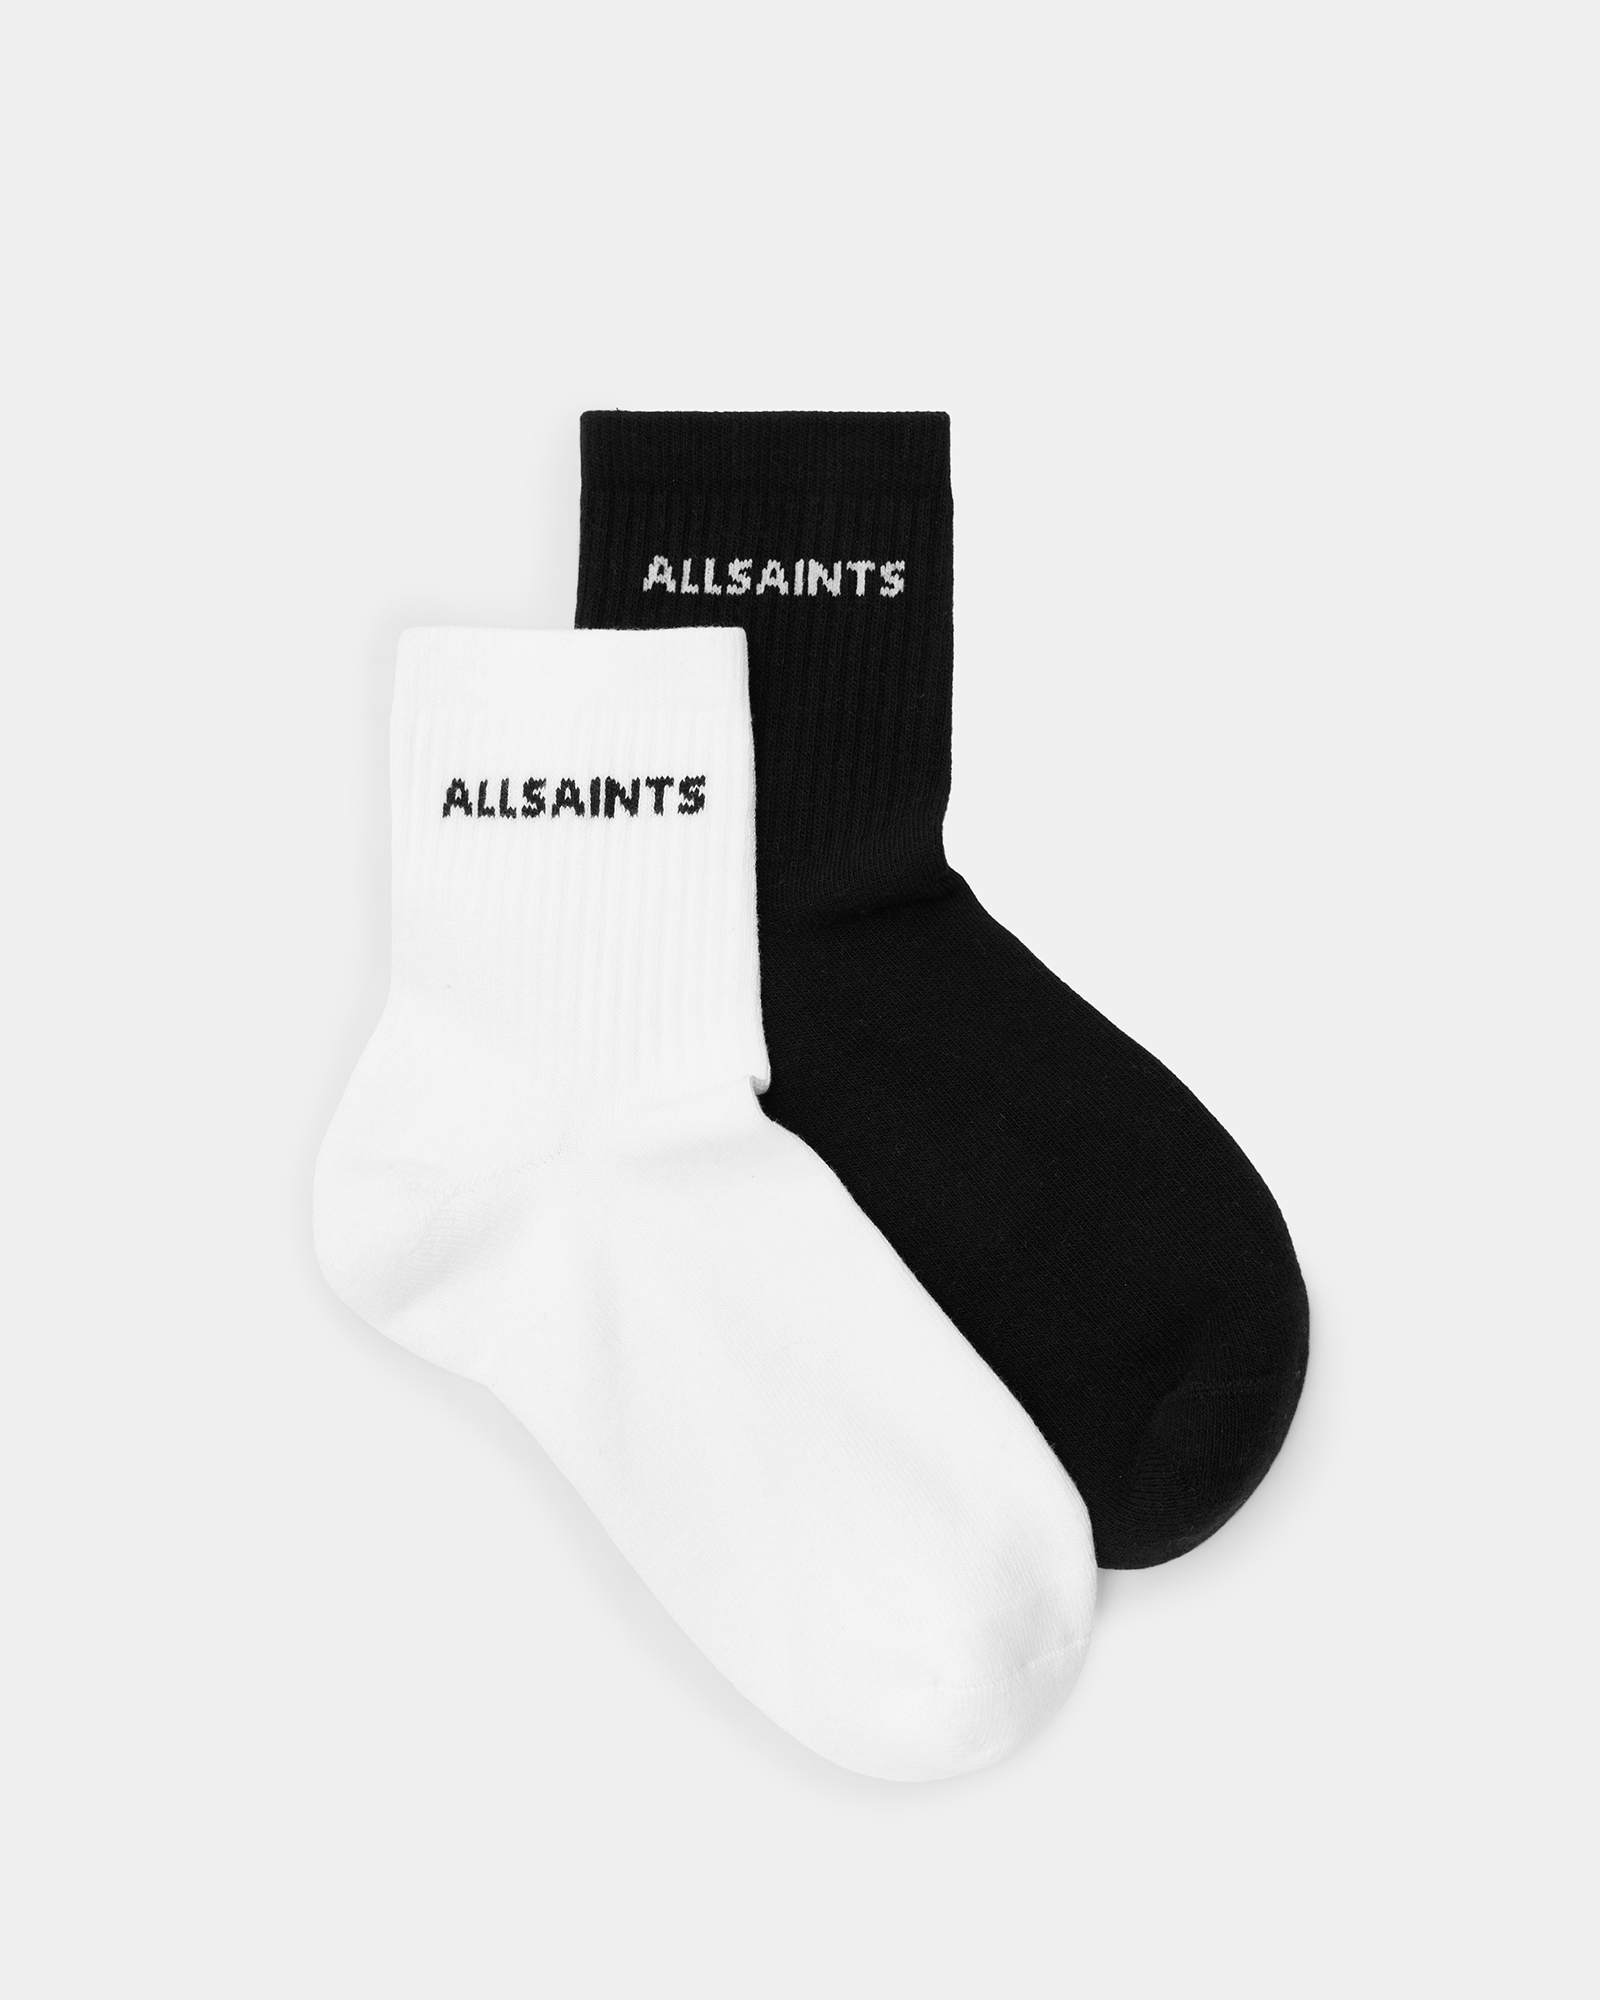 AllSaints Joss Logo Ankle Socks 2 Pack,, Black/White